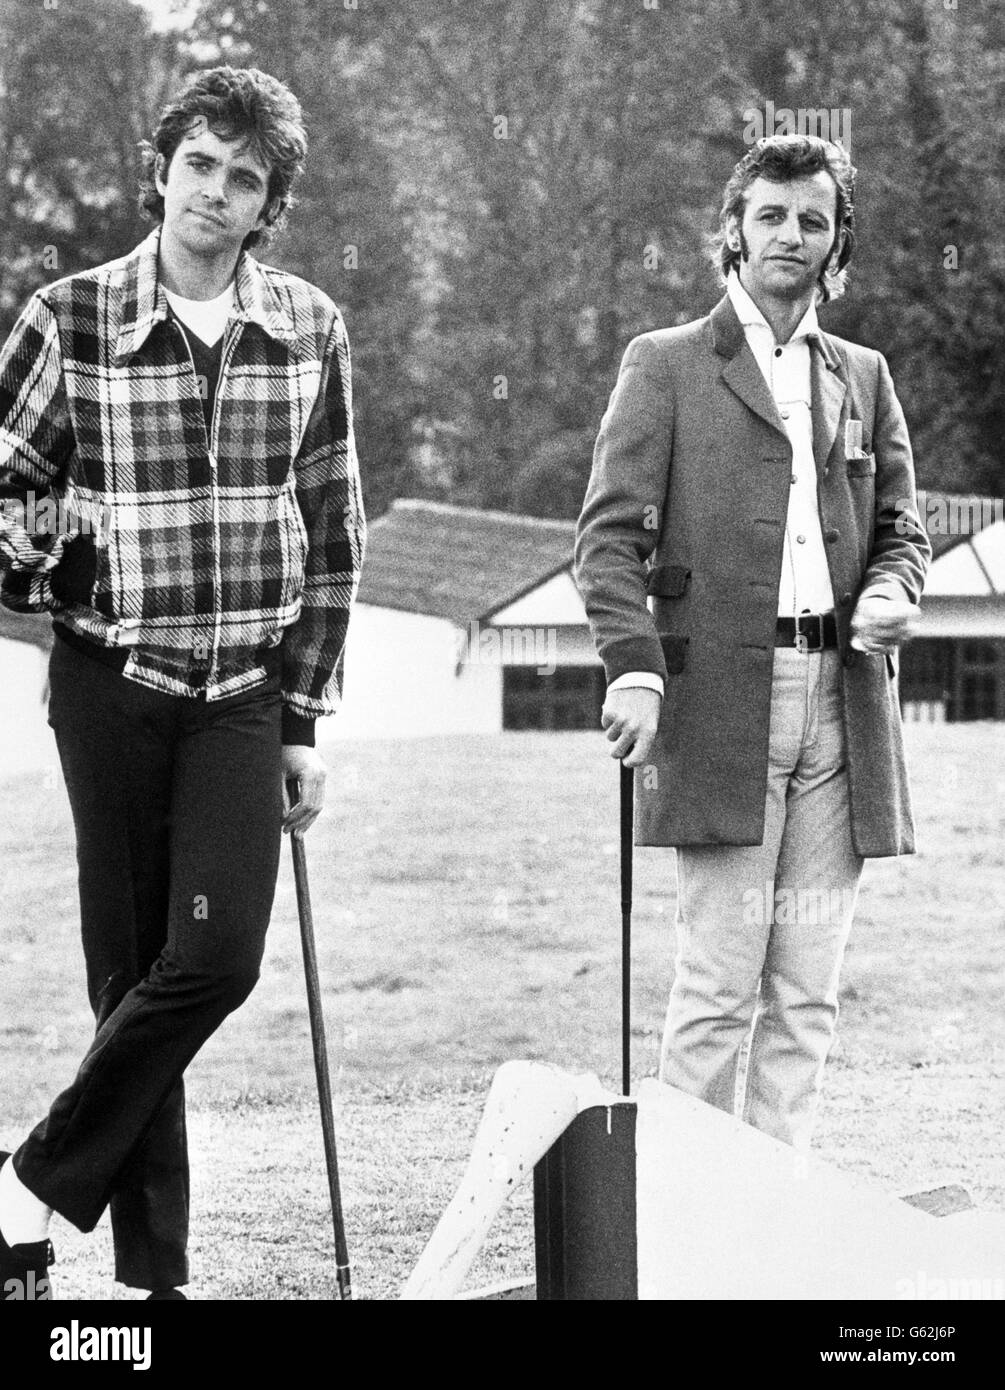 Musiker und Schauspieler David Essex und Ringo starr in einer Szene aus dem Film That'll Be The Day. Sie spielen die Anti-Helden Jim und Mike, die ein Feriencamp führen und kurzwechselnde Kunden genießen. Stockfoto